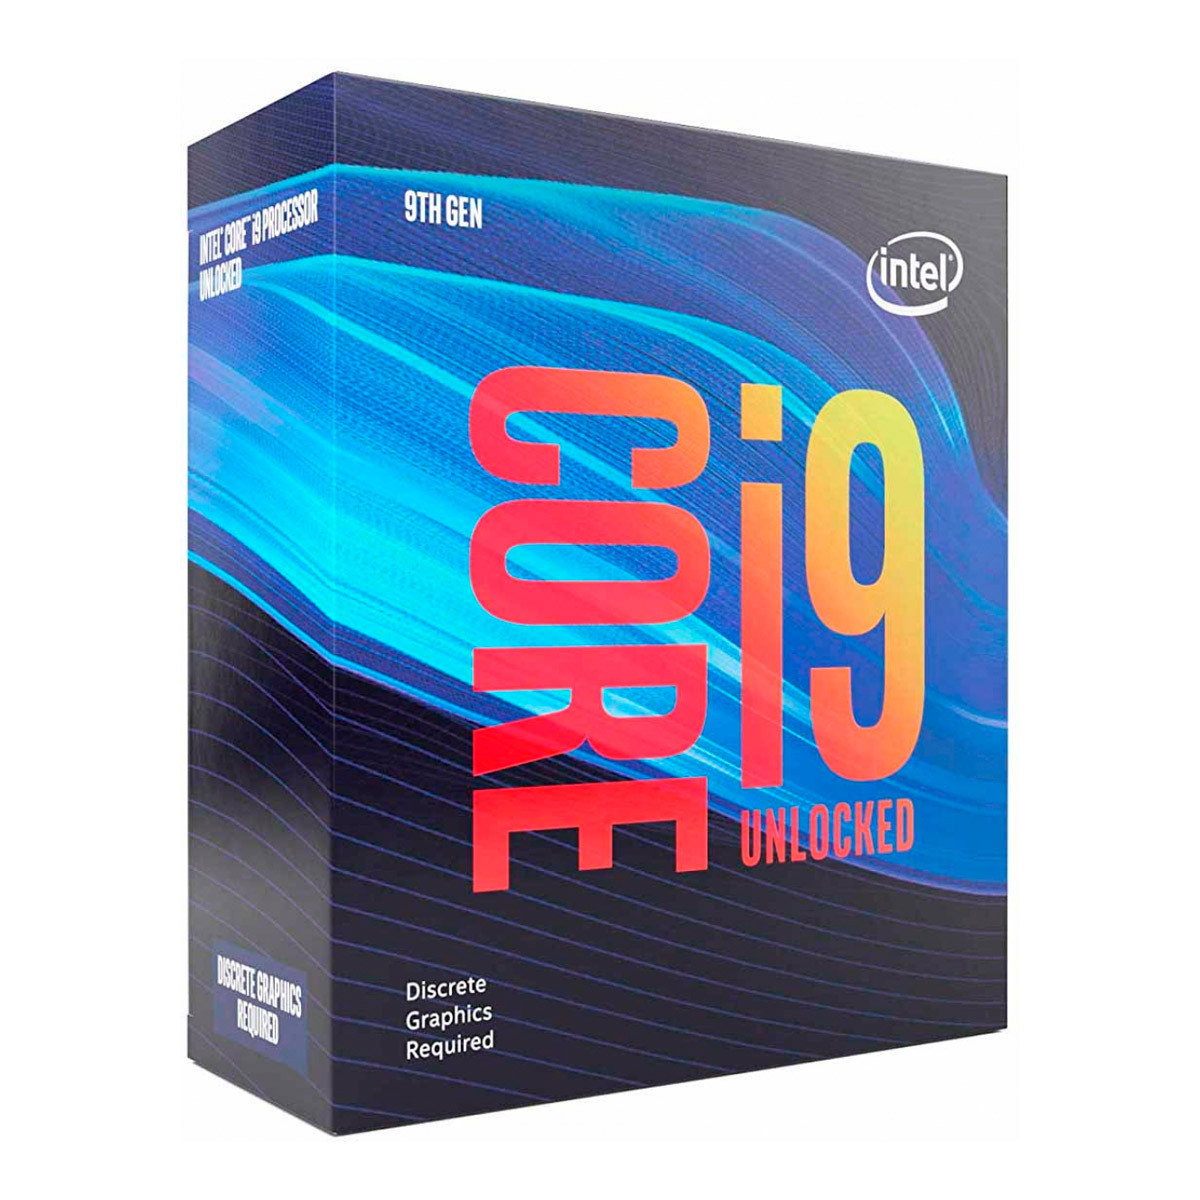 Intel® Core i9 9900KF - LGA 1151 - Octa Core - 3.60GHz (5.0GHz Turbo) - Cache 16MB - 9ª Geração Coffee Lake Refresh - BX80684I99900KF - sem Gráfico integrado e Cooler